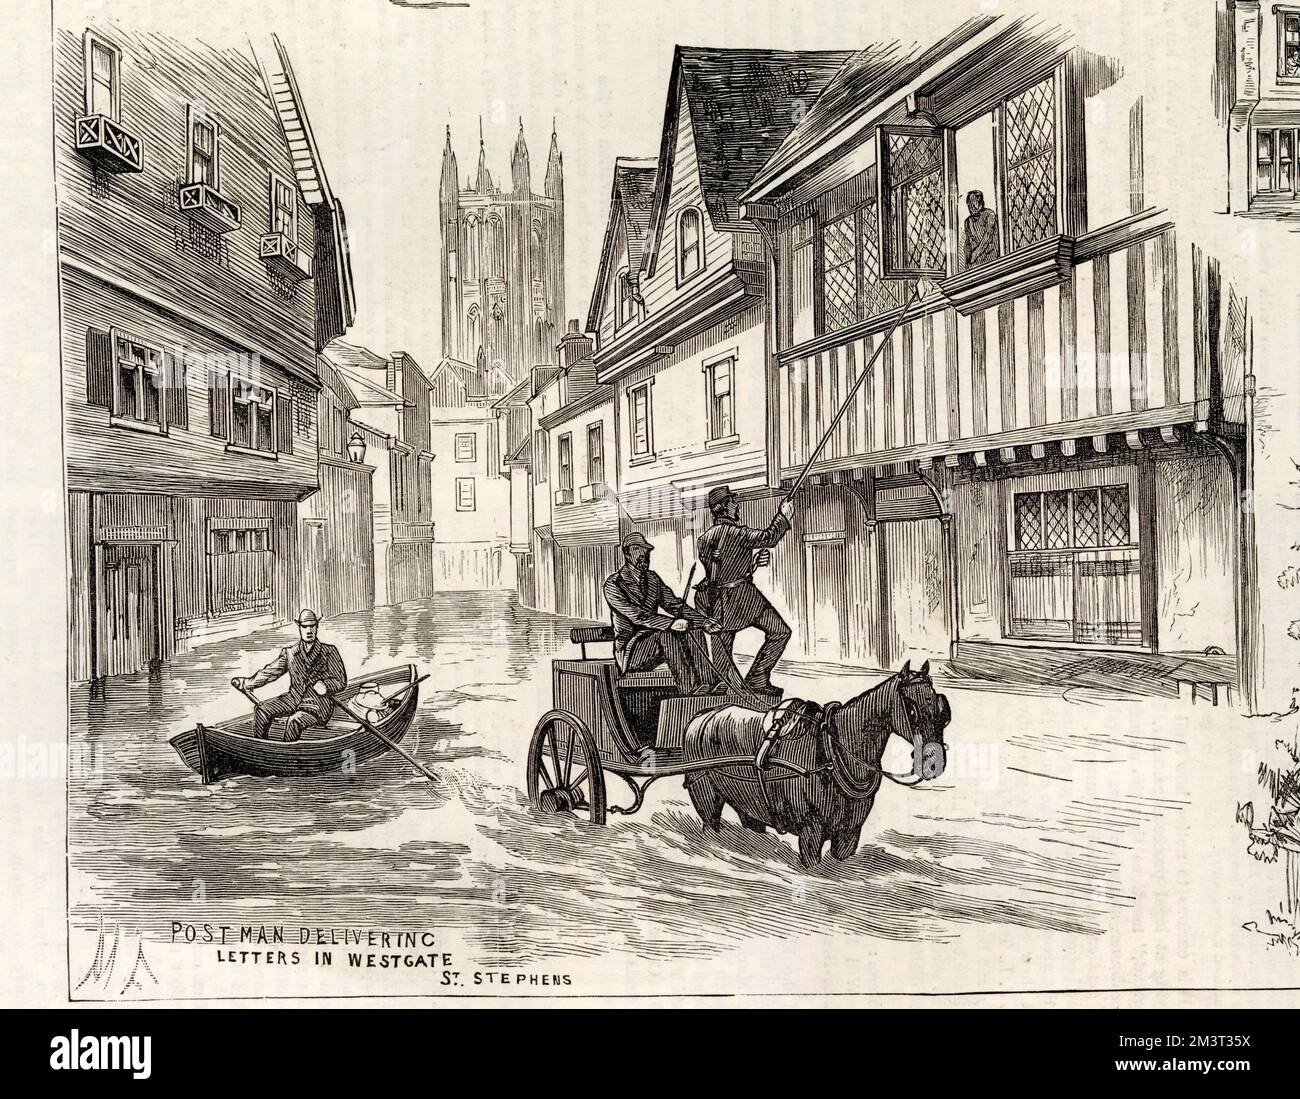 Überschwemmung in Canterbury im Jahr 1882. Ein Postbote übergibt einem Bewohner in einem Haus im mittelalterlichen Westgate Briefe mit einer Pferdekutsche und einem langen Stab, während ein anderer in einem Ruderboot vorbeifährt! Stockfoto